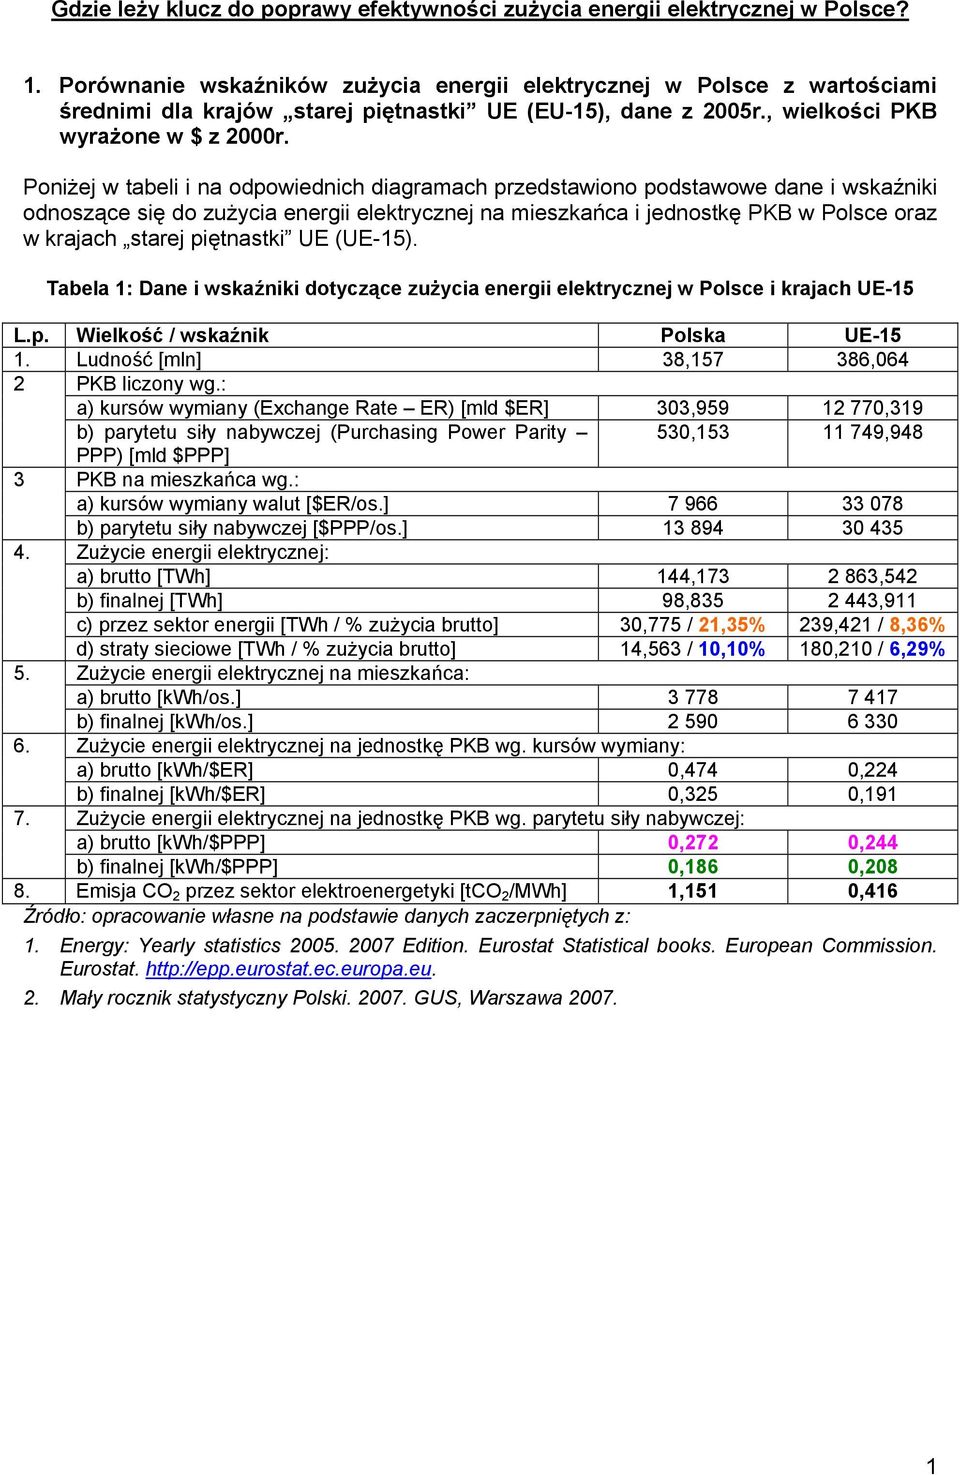 Poniżej w tabeli i na odpowiednich diagramach przedstawiono podstawowe dane i wskaźniki odnoszące się do zużycia energii elektrycznej na mieszkańca i jednostkę PKB w Polsce oraz w krajach starej